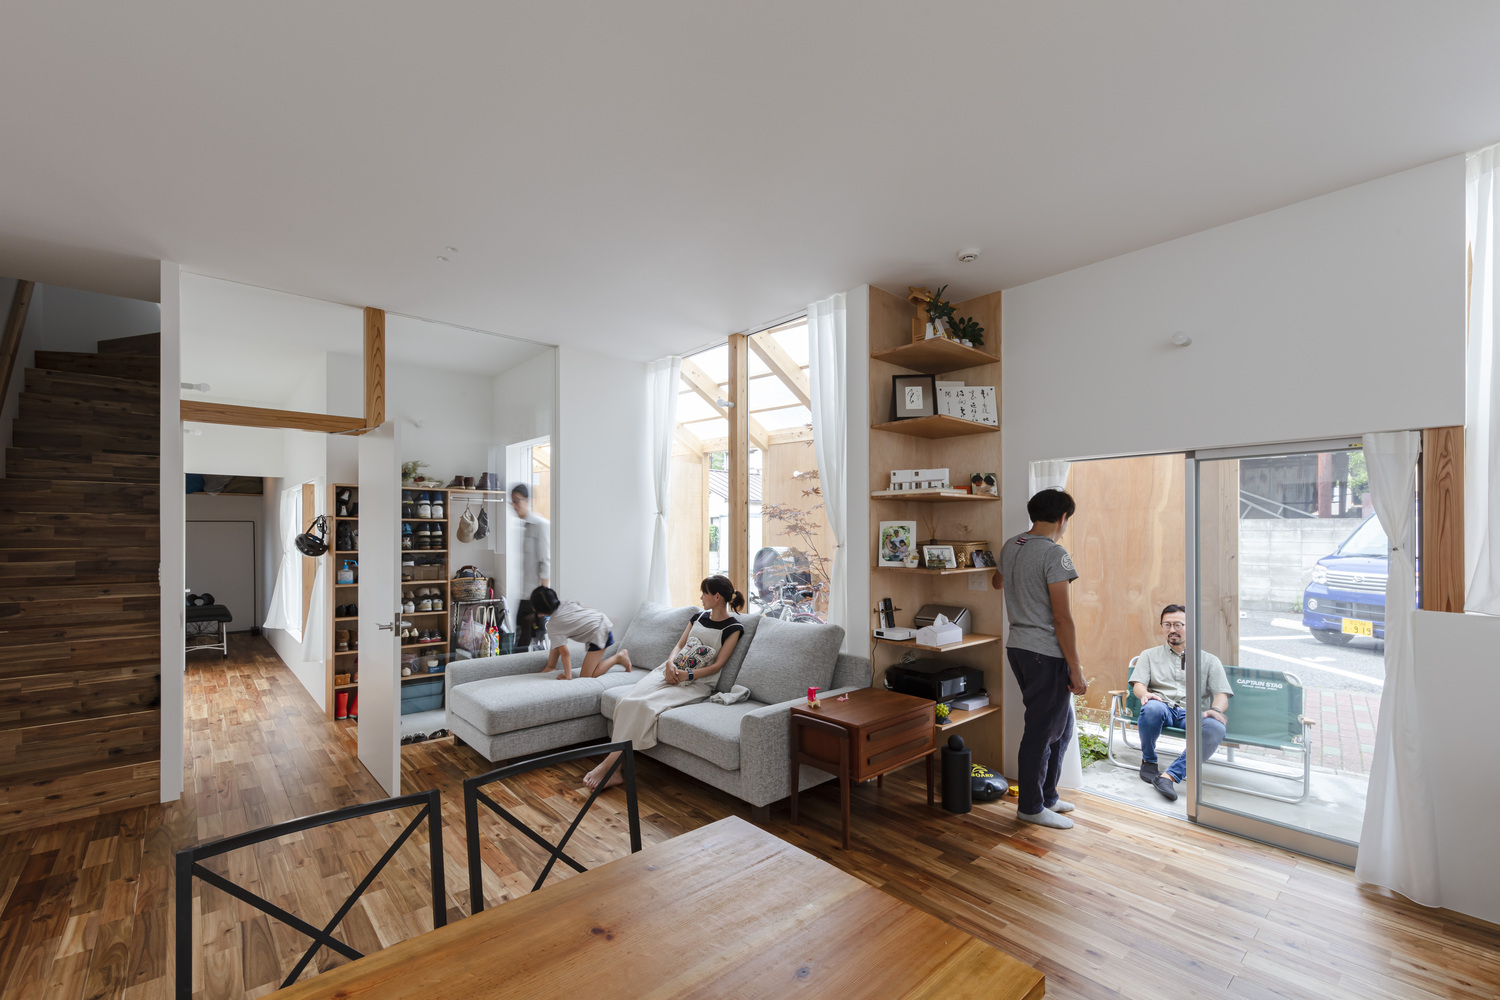 Không gian nội thất nhà 2 tầng được thiết kế theo phong cách mở phóng khoáng, góp phần tăng sự gắn kết giữa các thành viên gia đình.